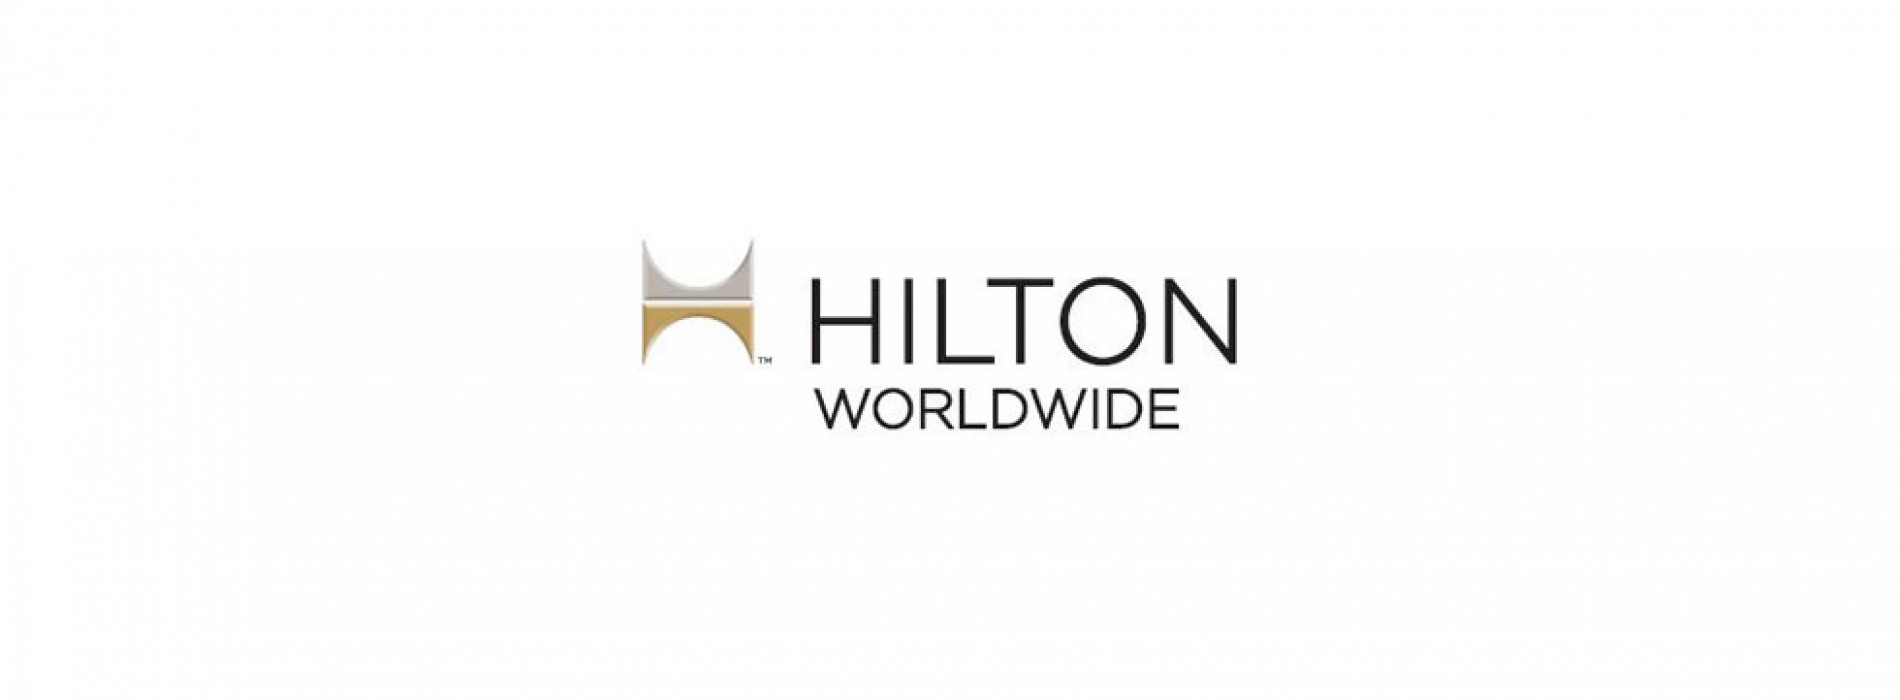 Hilton announces Largest Global Sale Ever